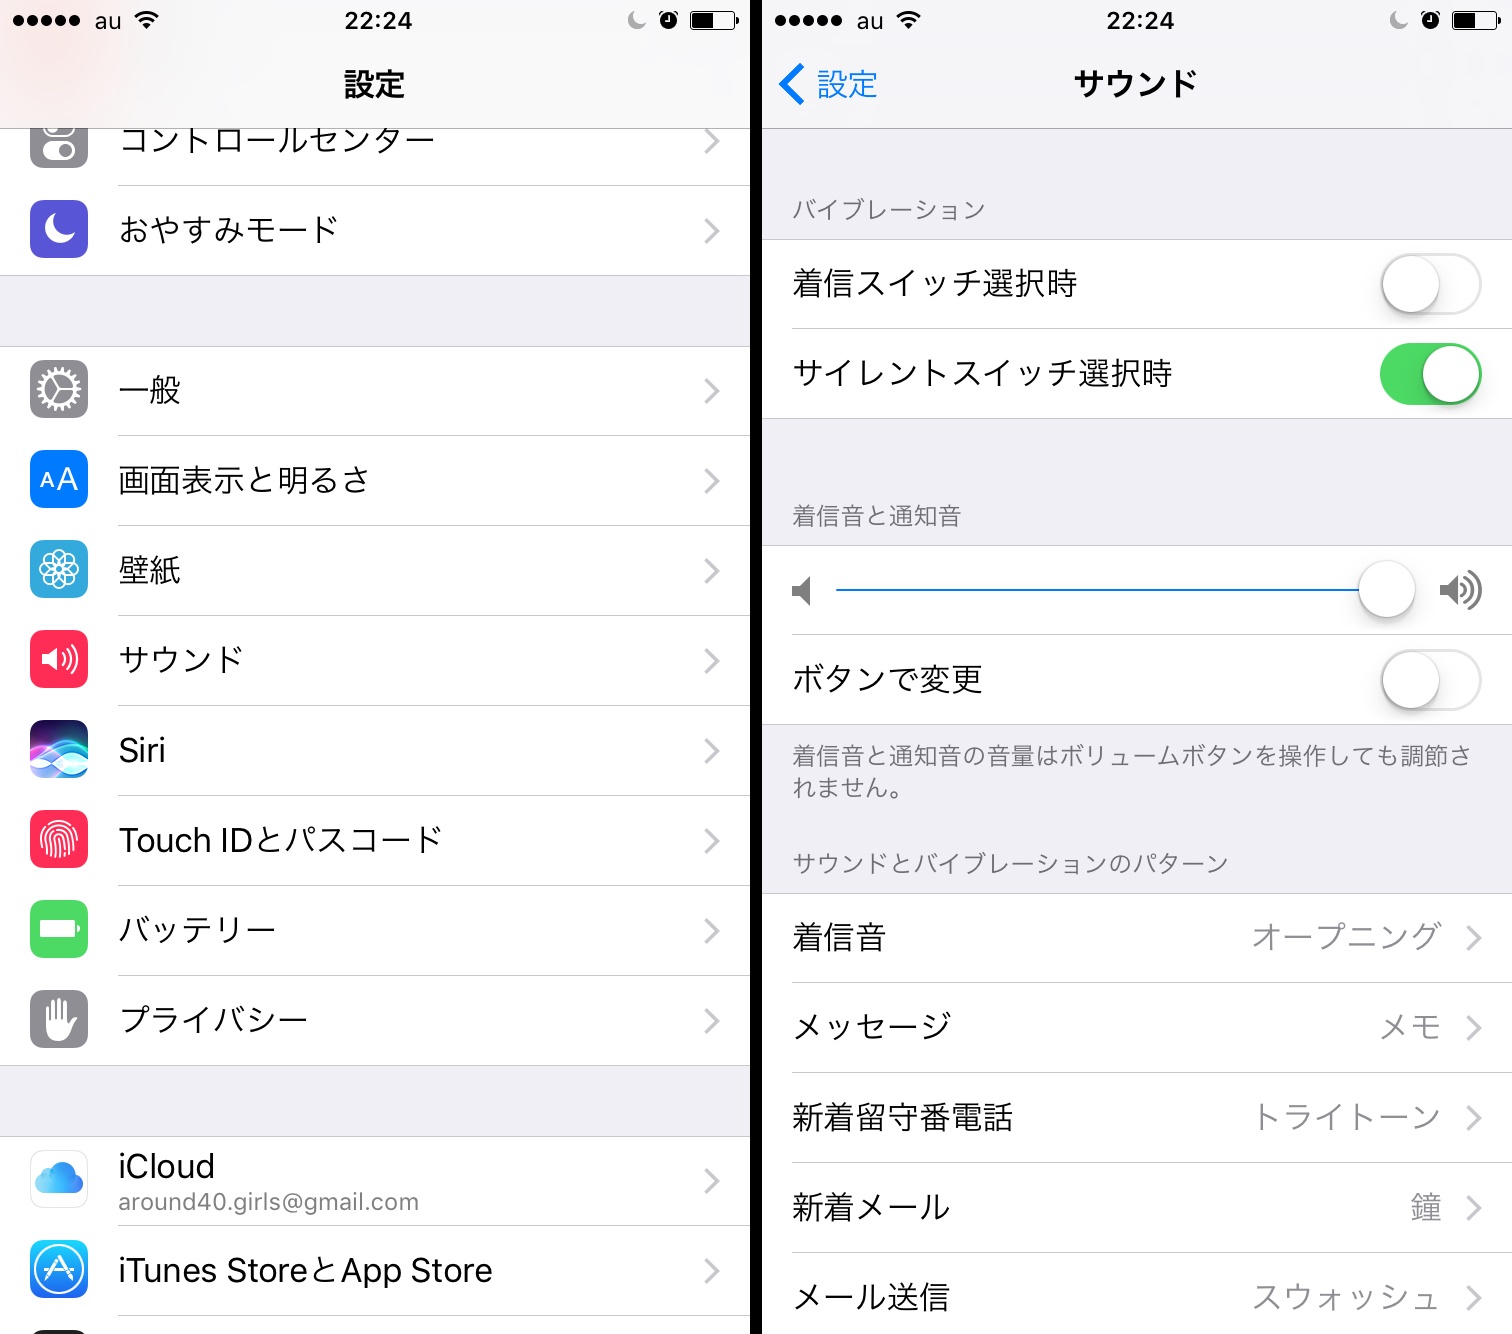 着信時の振動がわずらわしい マナーモード解除時はバイブレーションをオフにしよう Iphone Tips Engadget 日本版